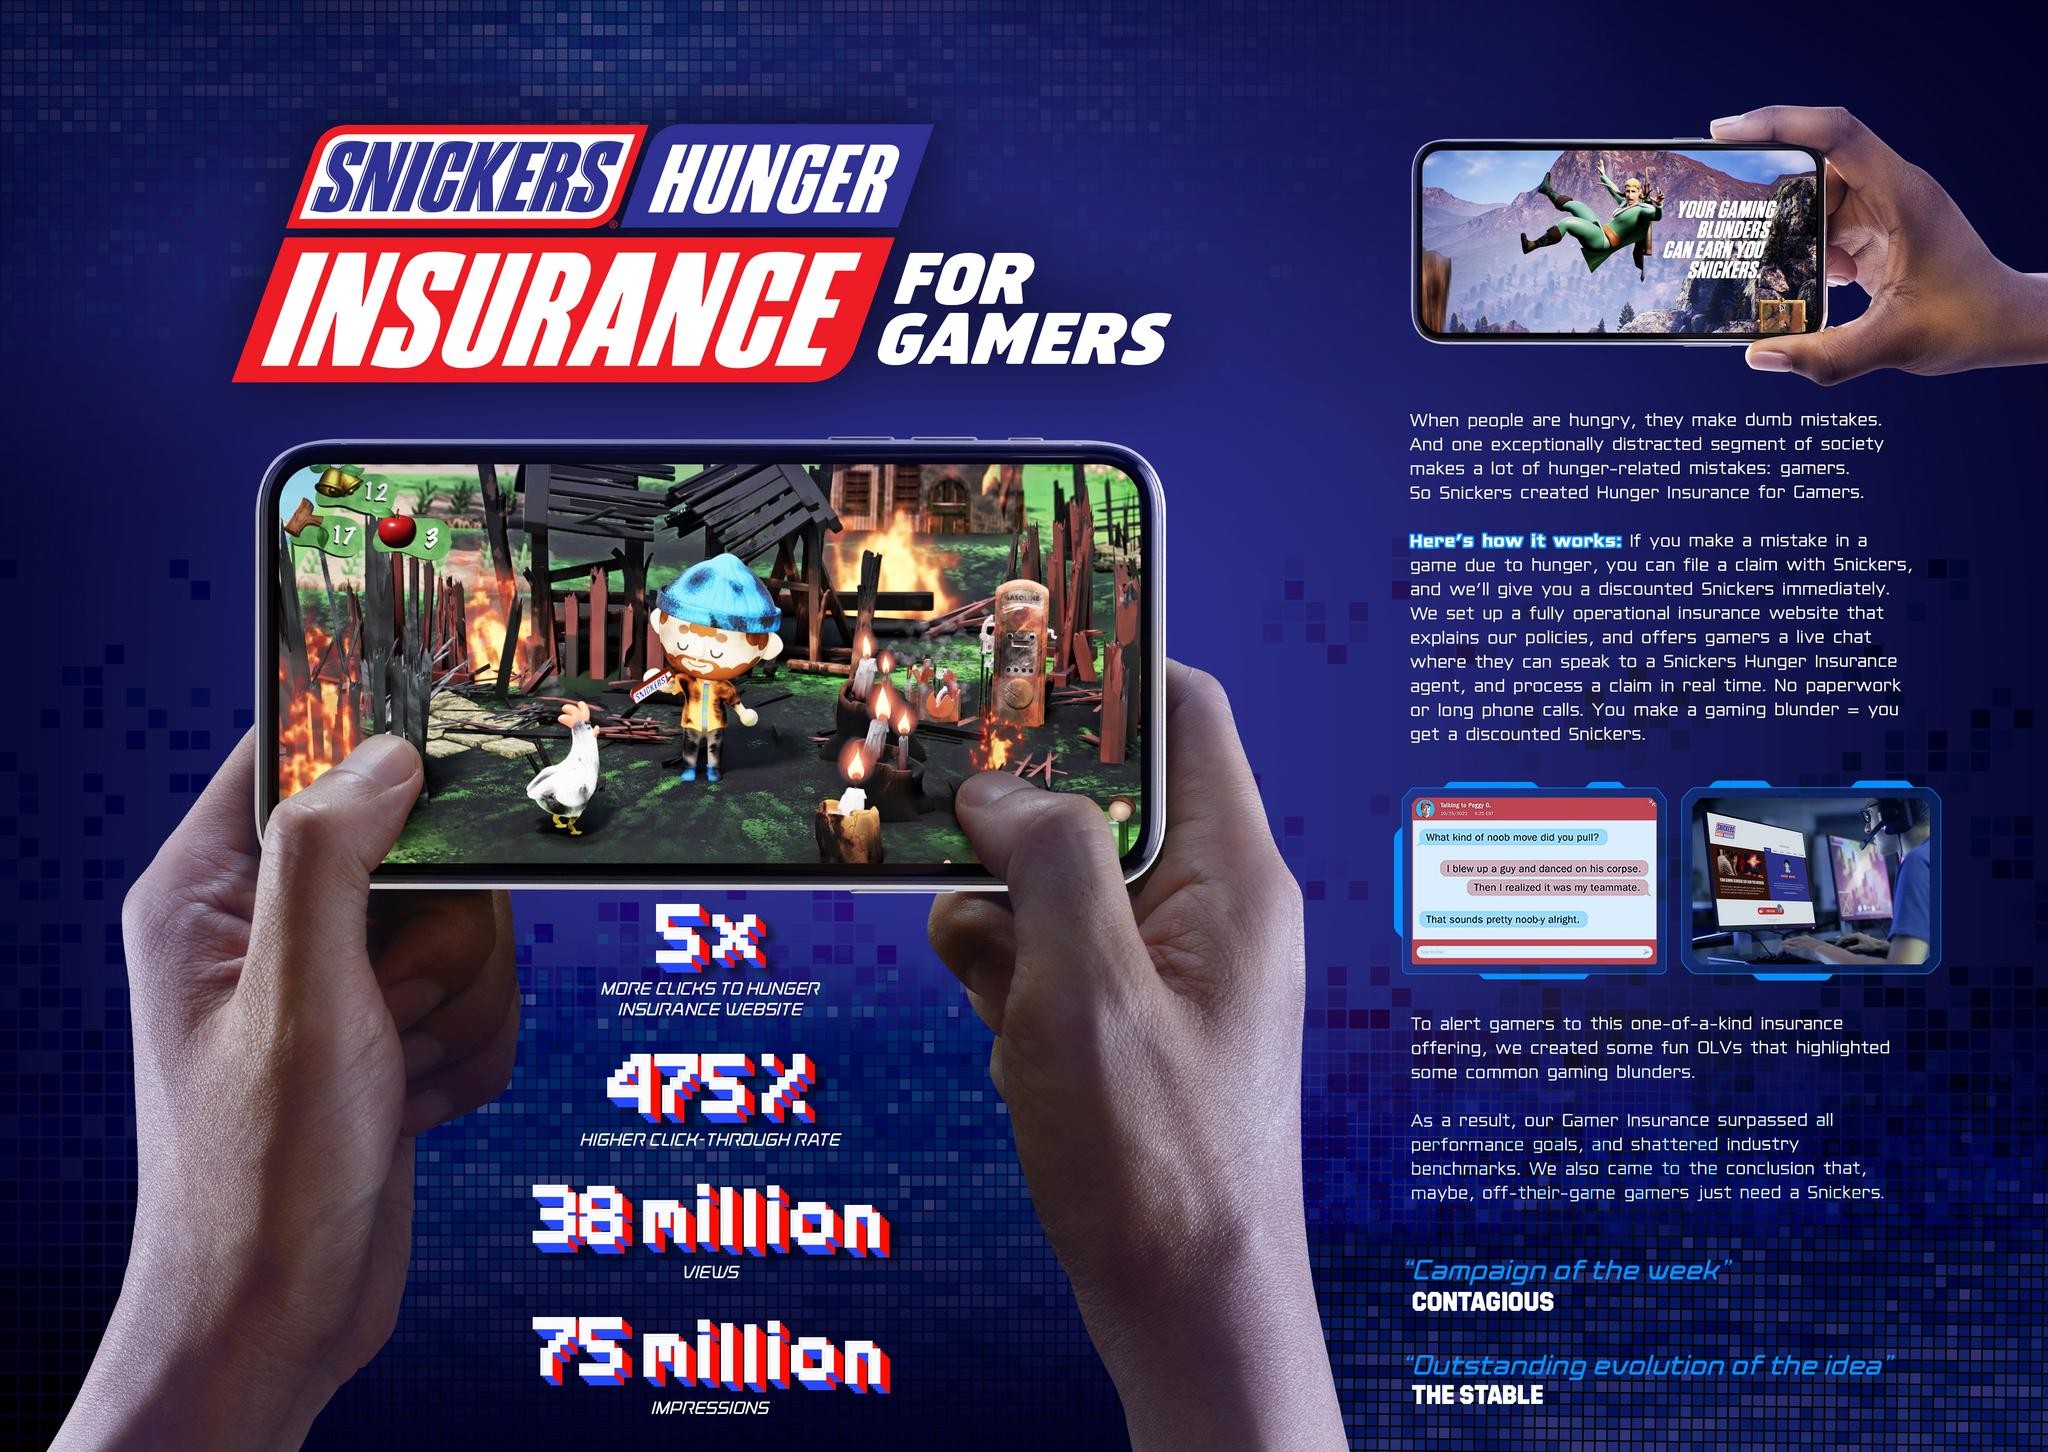 Hunger Insurance for Gamers